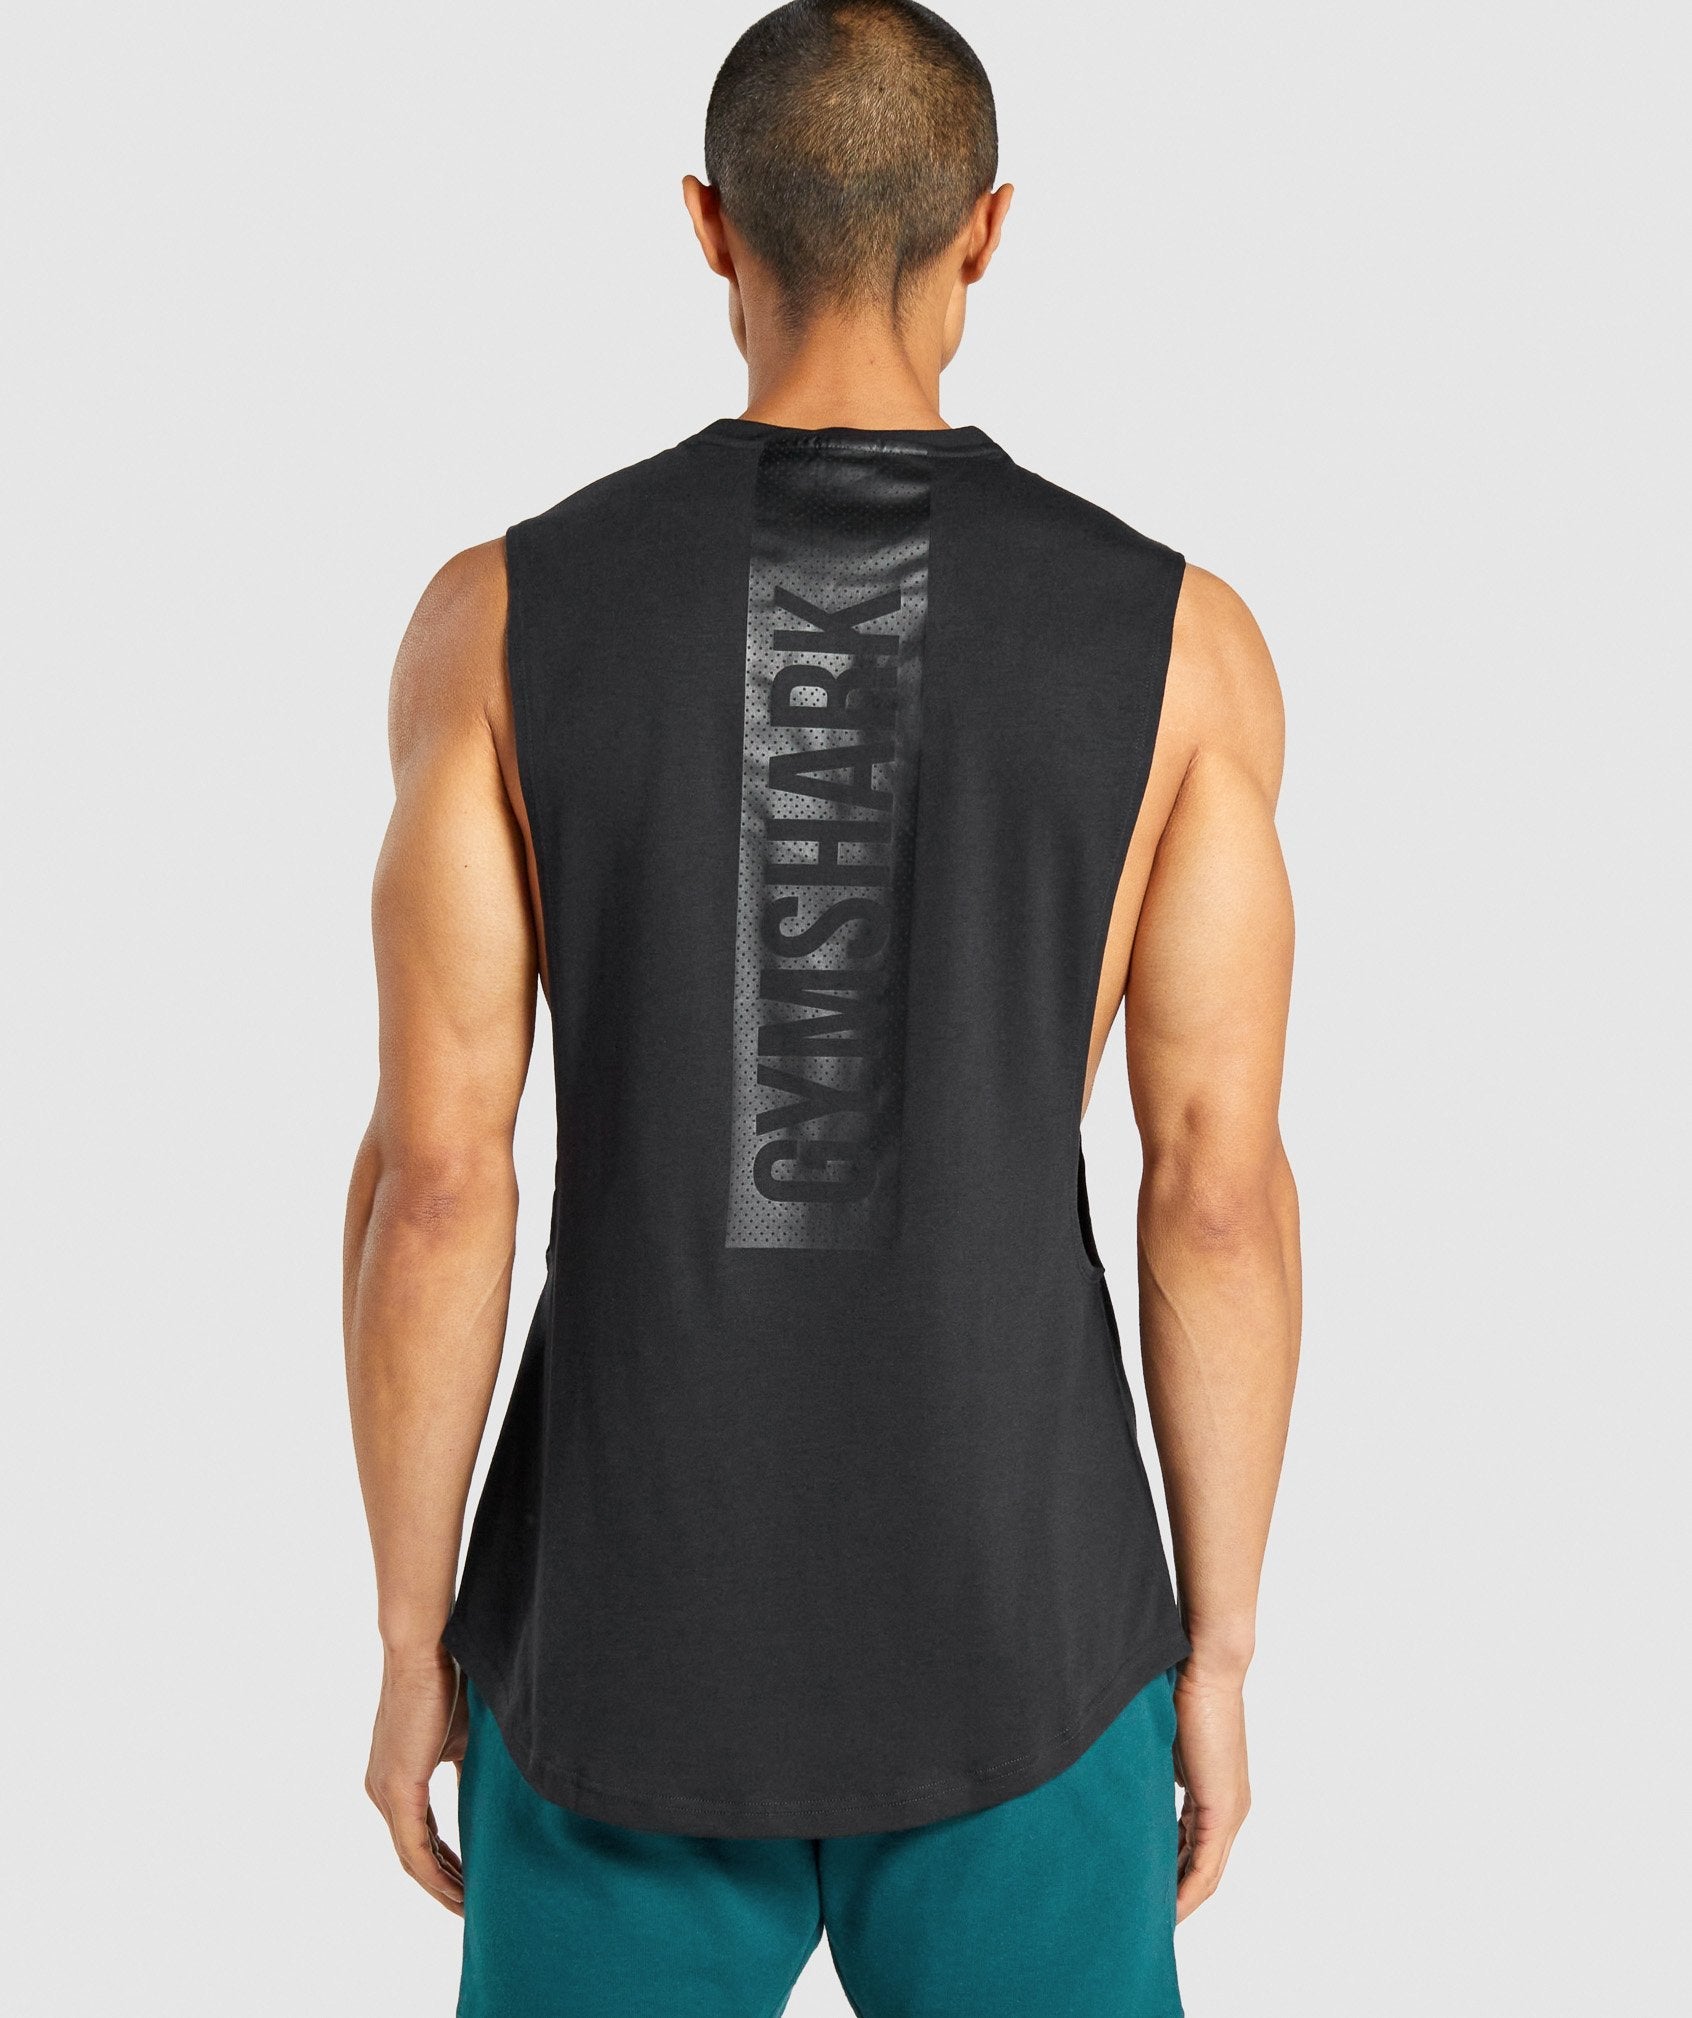 2015 summer style gymshark tank top men bodybuilding camisetas de